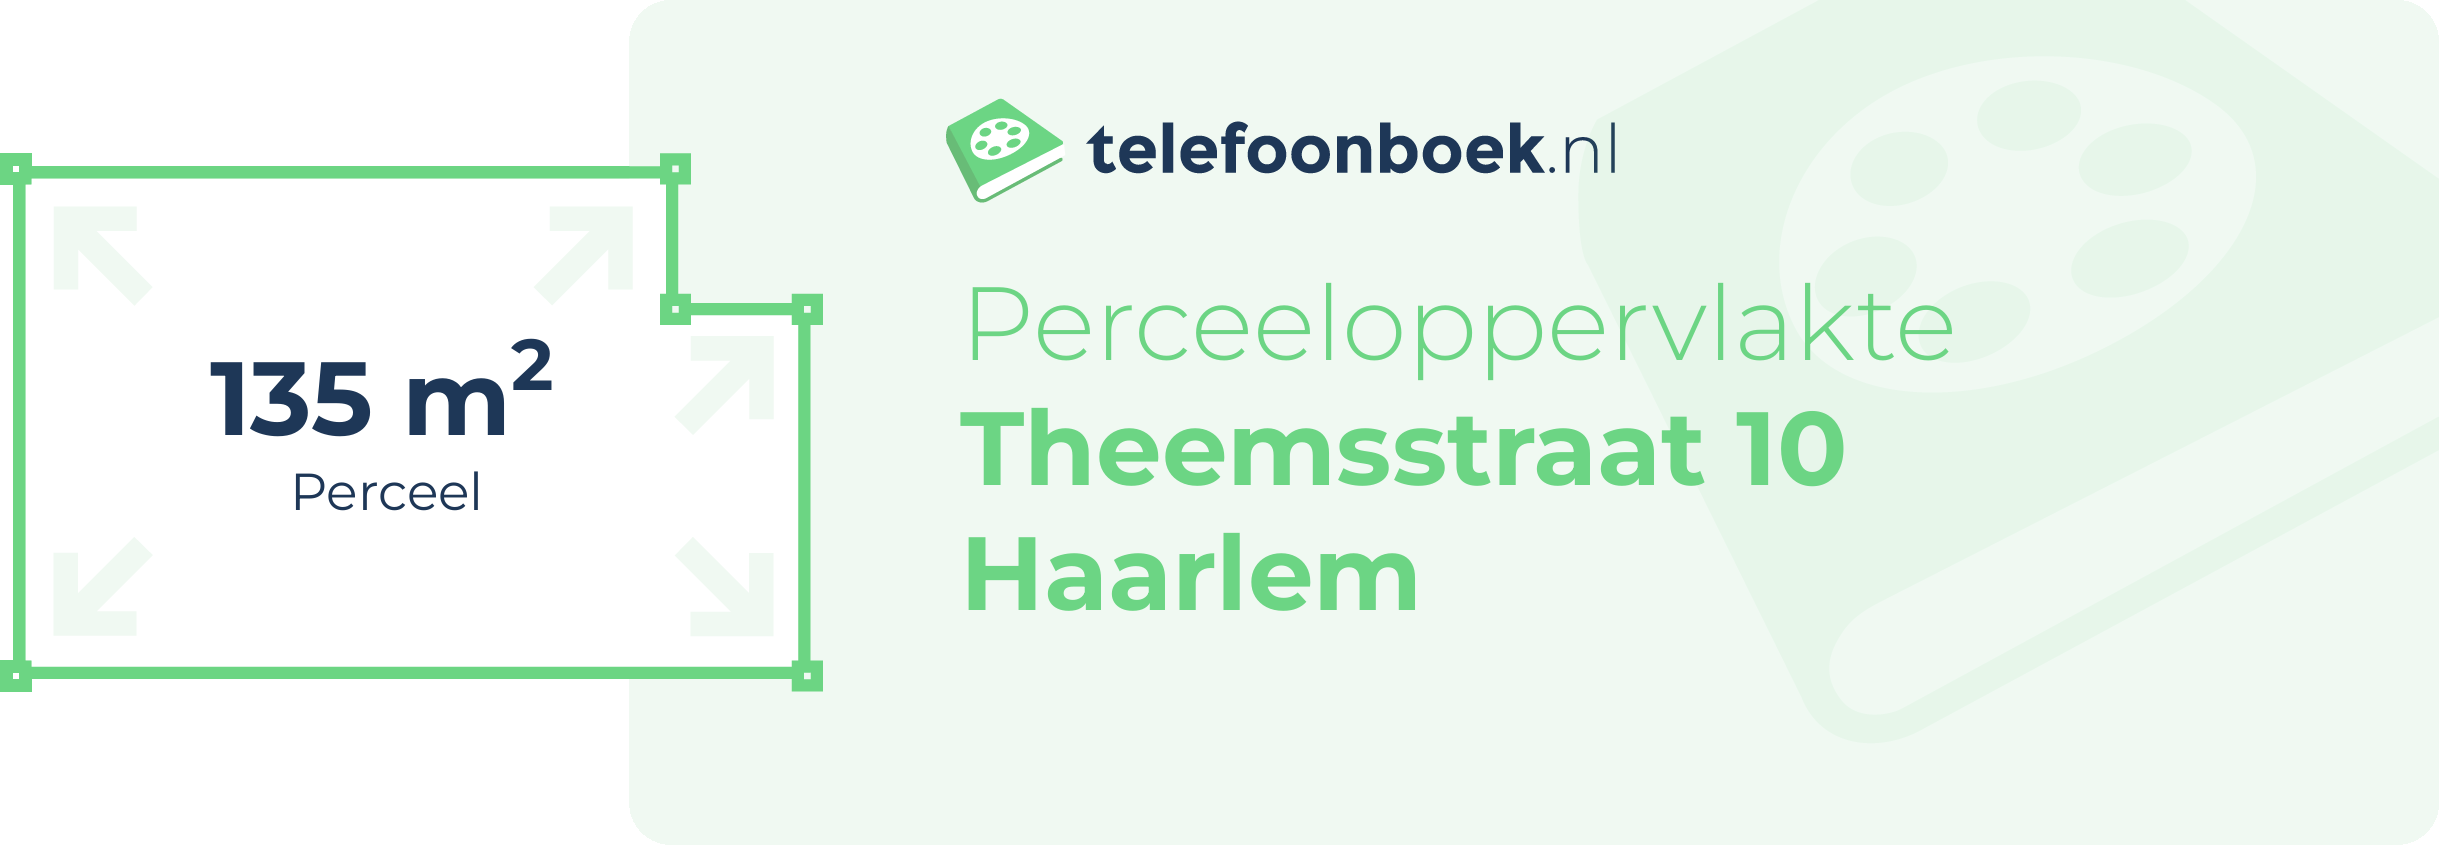 Perceeloppervlakte Theemsstraat 10 Haarlem